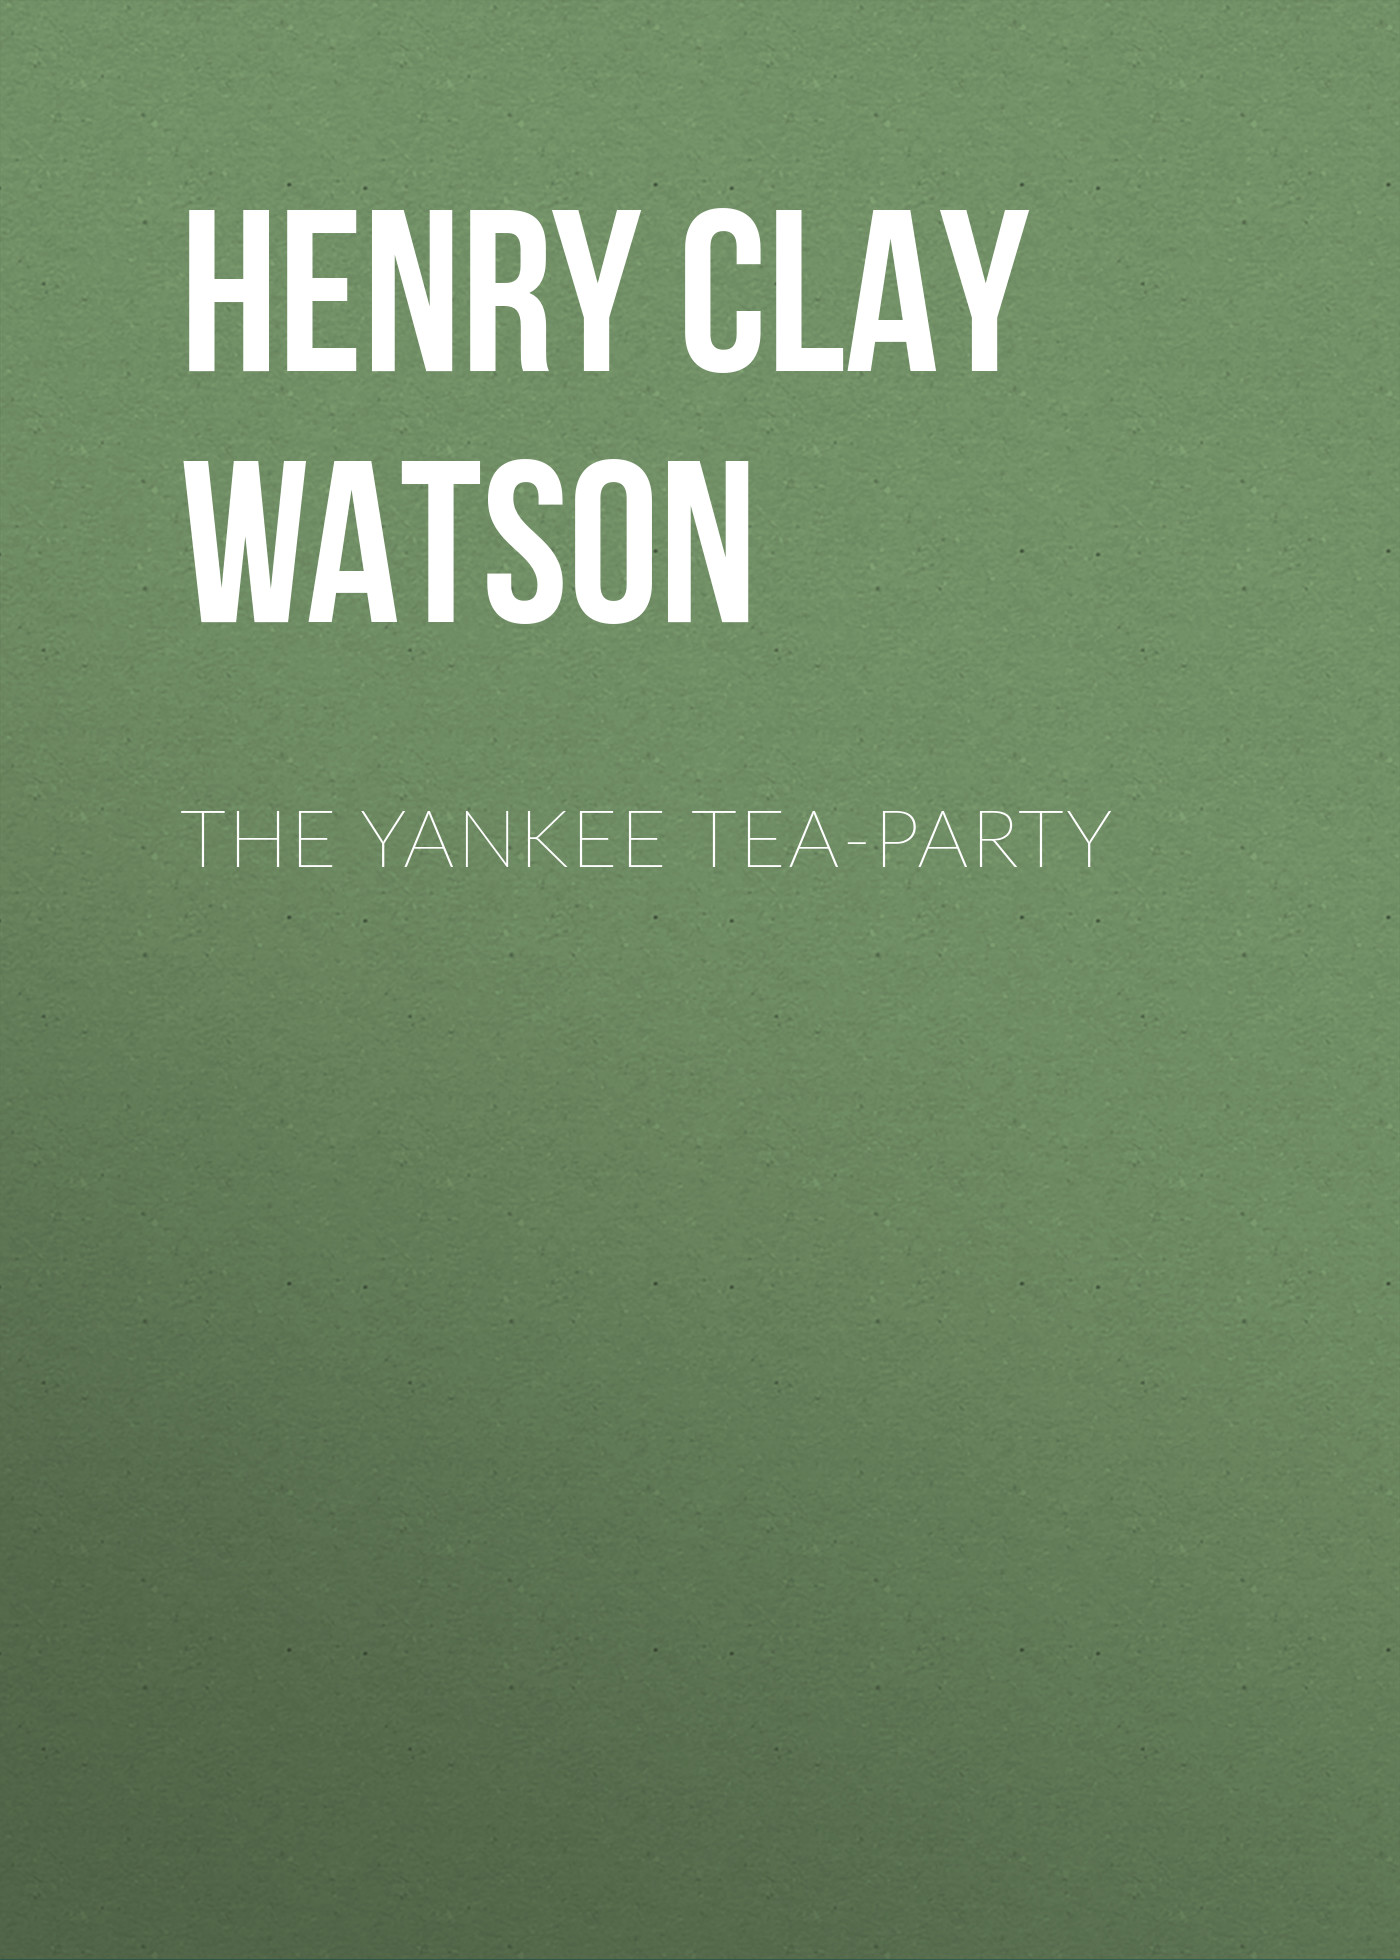 Книга The Yankee Tea-party из серии , созданная Henry Clay Watson, может относится к жанру Зарубежная классика, История, Зарубежная образовательная литература, Зарубежная старинная литература. Стоимость электронной книги The Yankee Tea-party с идентификатором 34843470 составляет 0 руб.